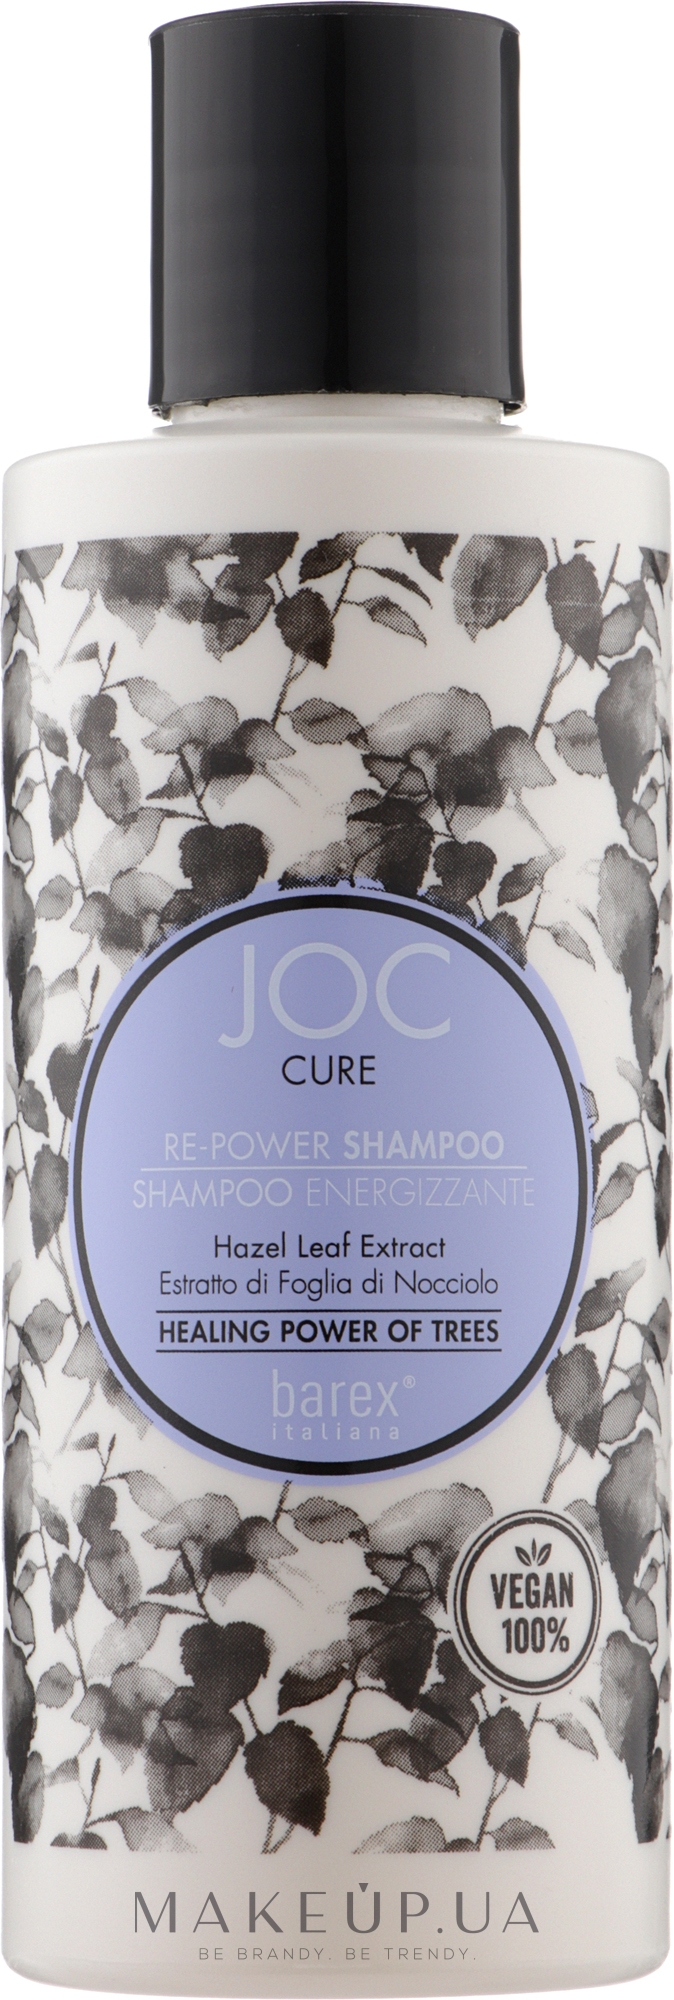 Шампунь проти випадання волосся - Barex Italuana Joc Cure Re-Power Shampoo — фото 250ml